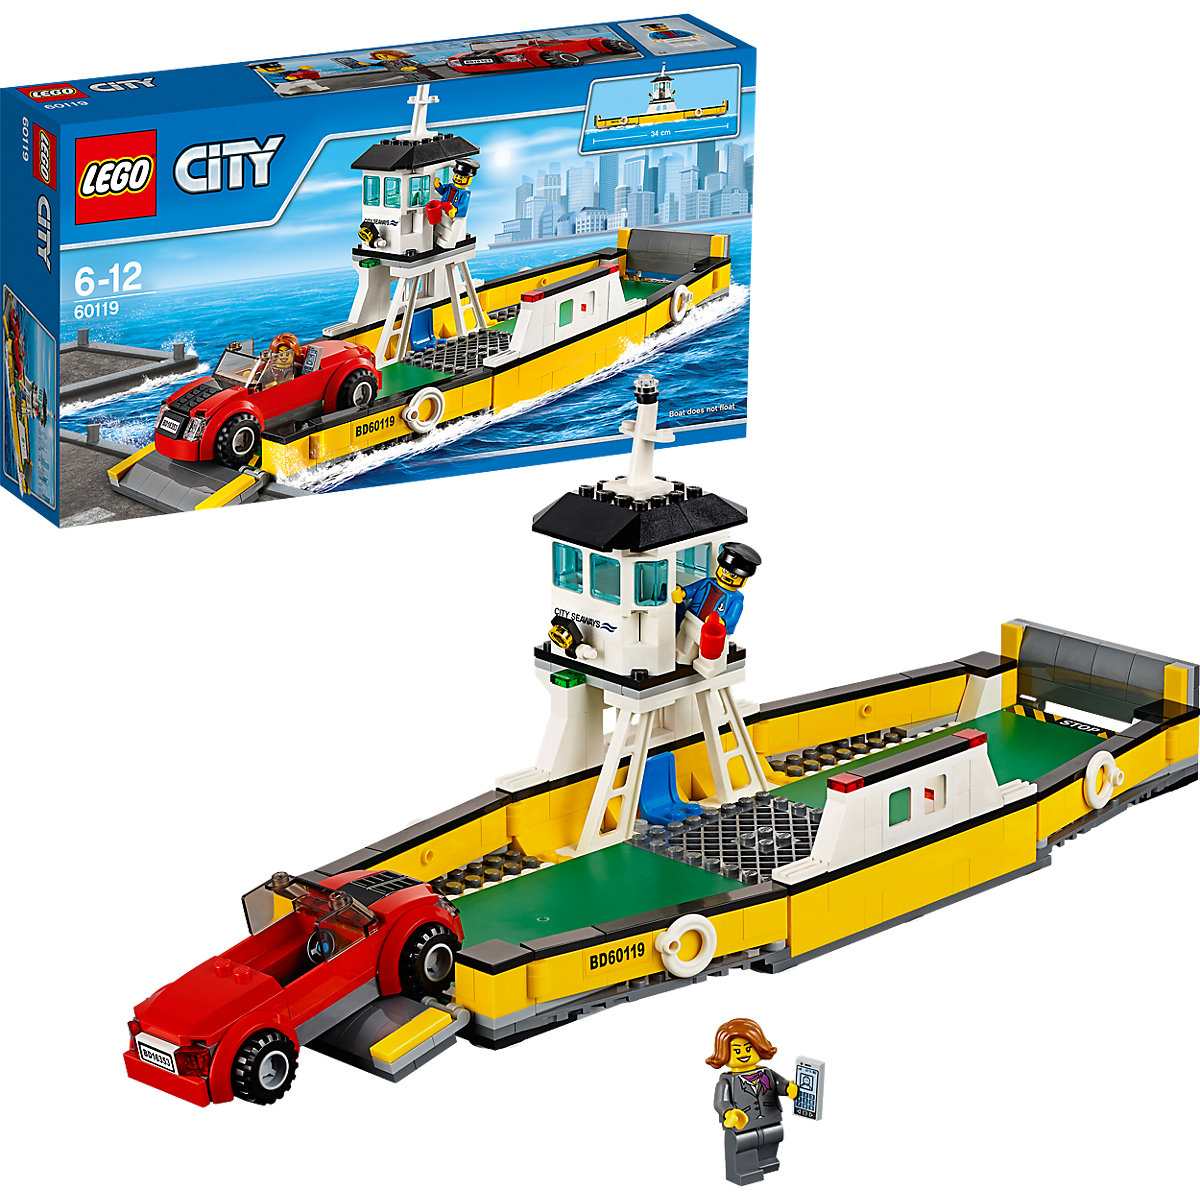 Лего Сити набор 60119